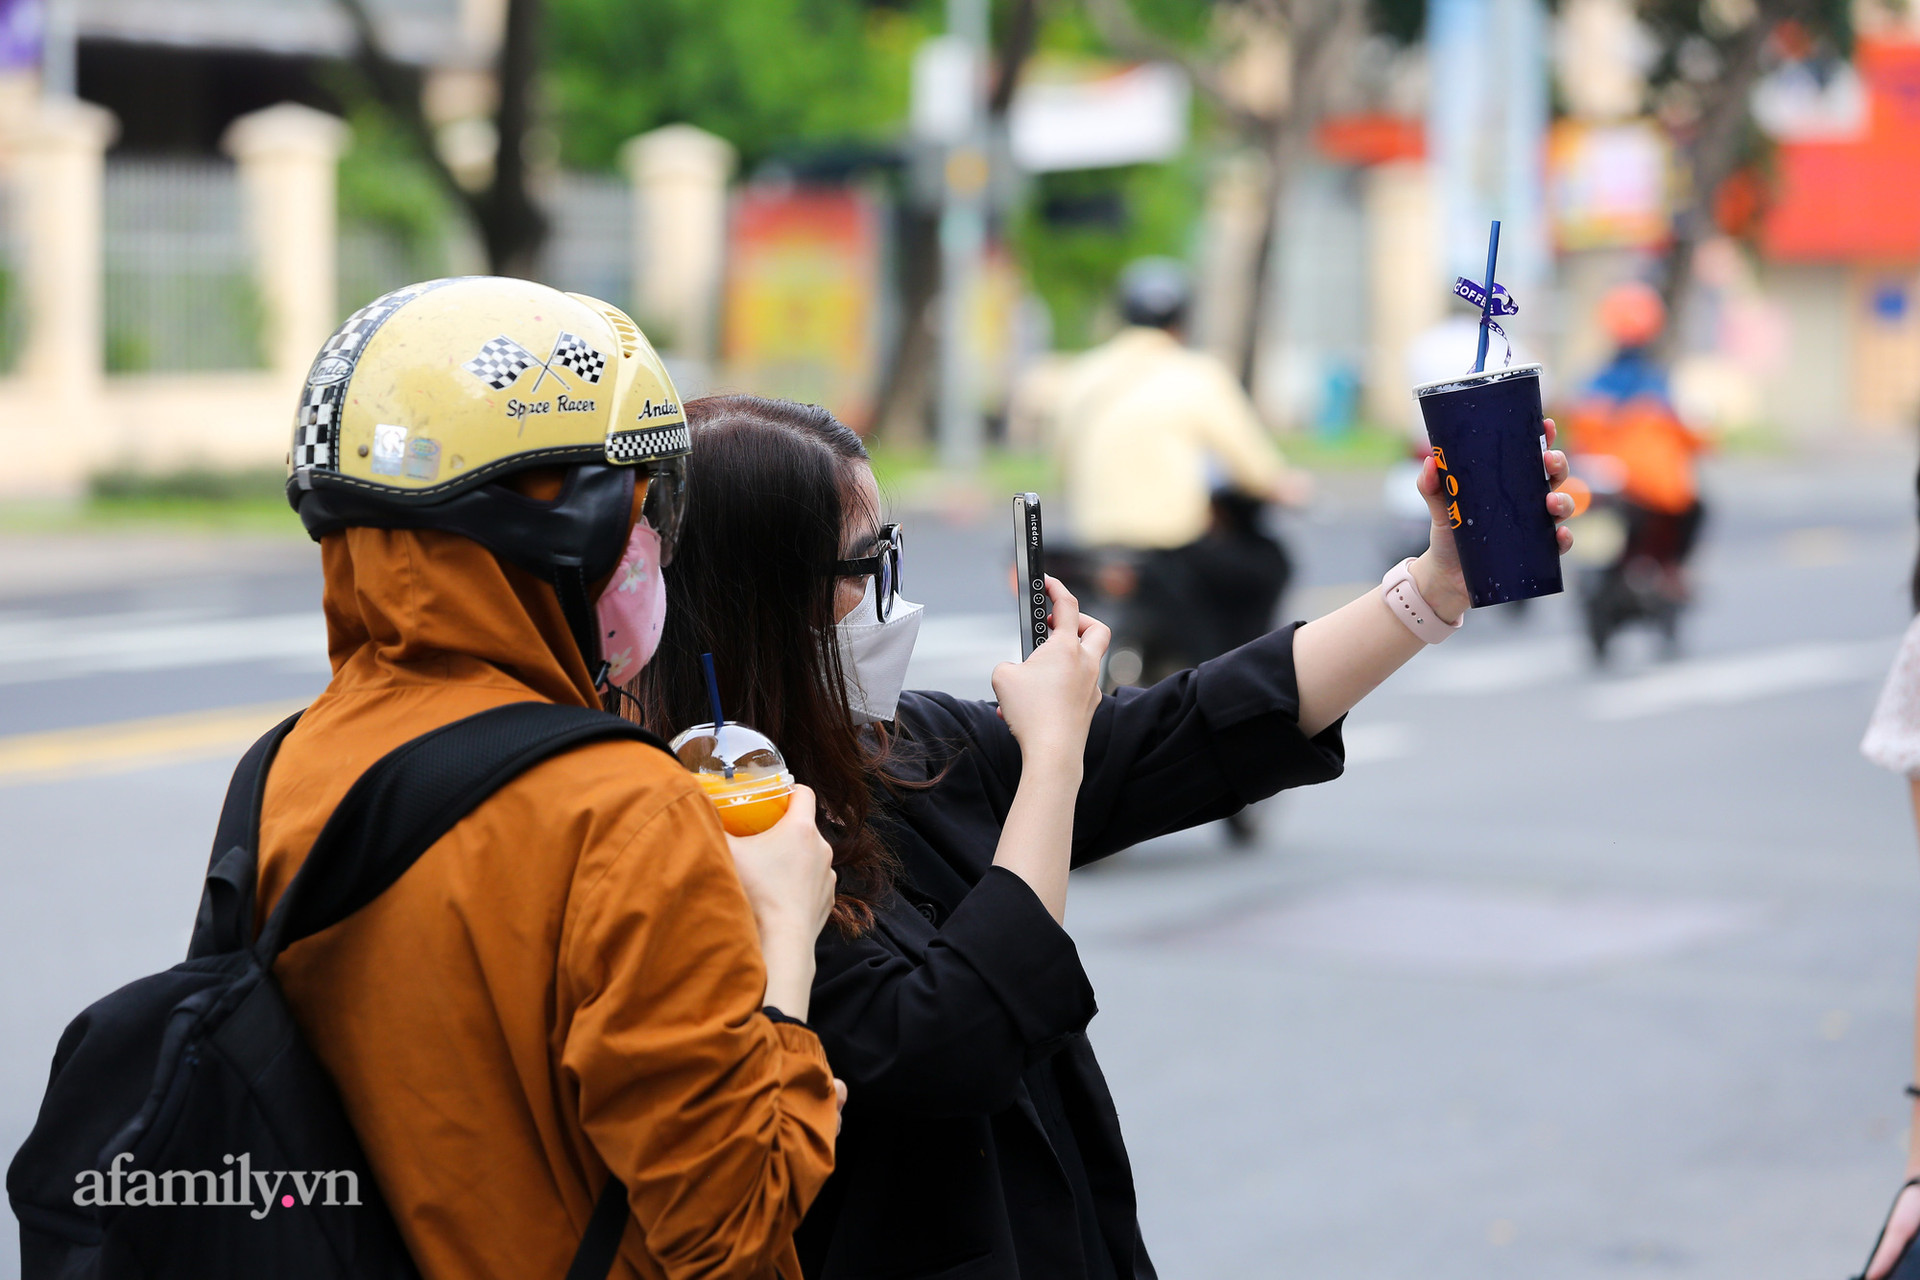 Sài Gòn vừa nới lỏng giãn cách, nhiều bạn trẻ đã đứng chờ hơn 20 phút để chụp được 1 tấm hình trước quán cà phê có bờ tường hot nhất mạng xã hội, “thật không hiểu nổi!?” - Ảnh 7.